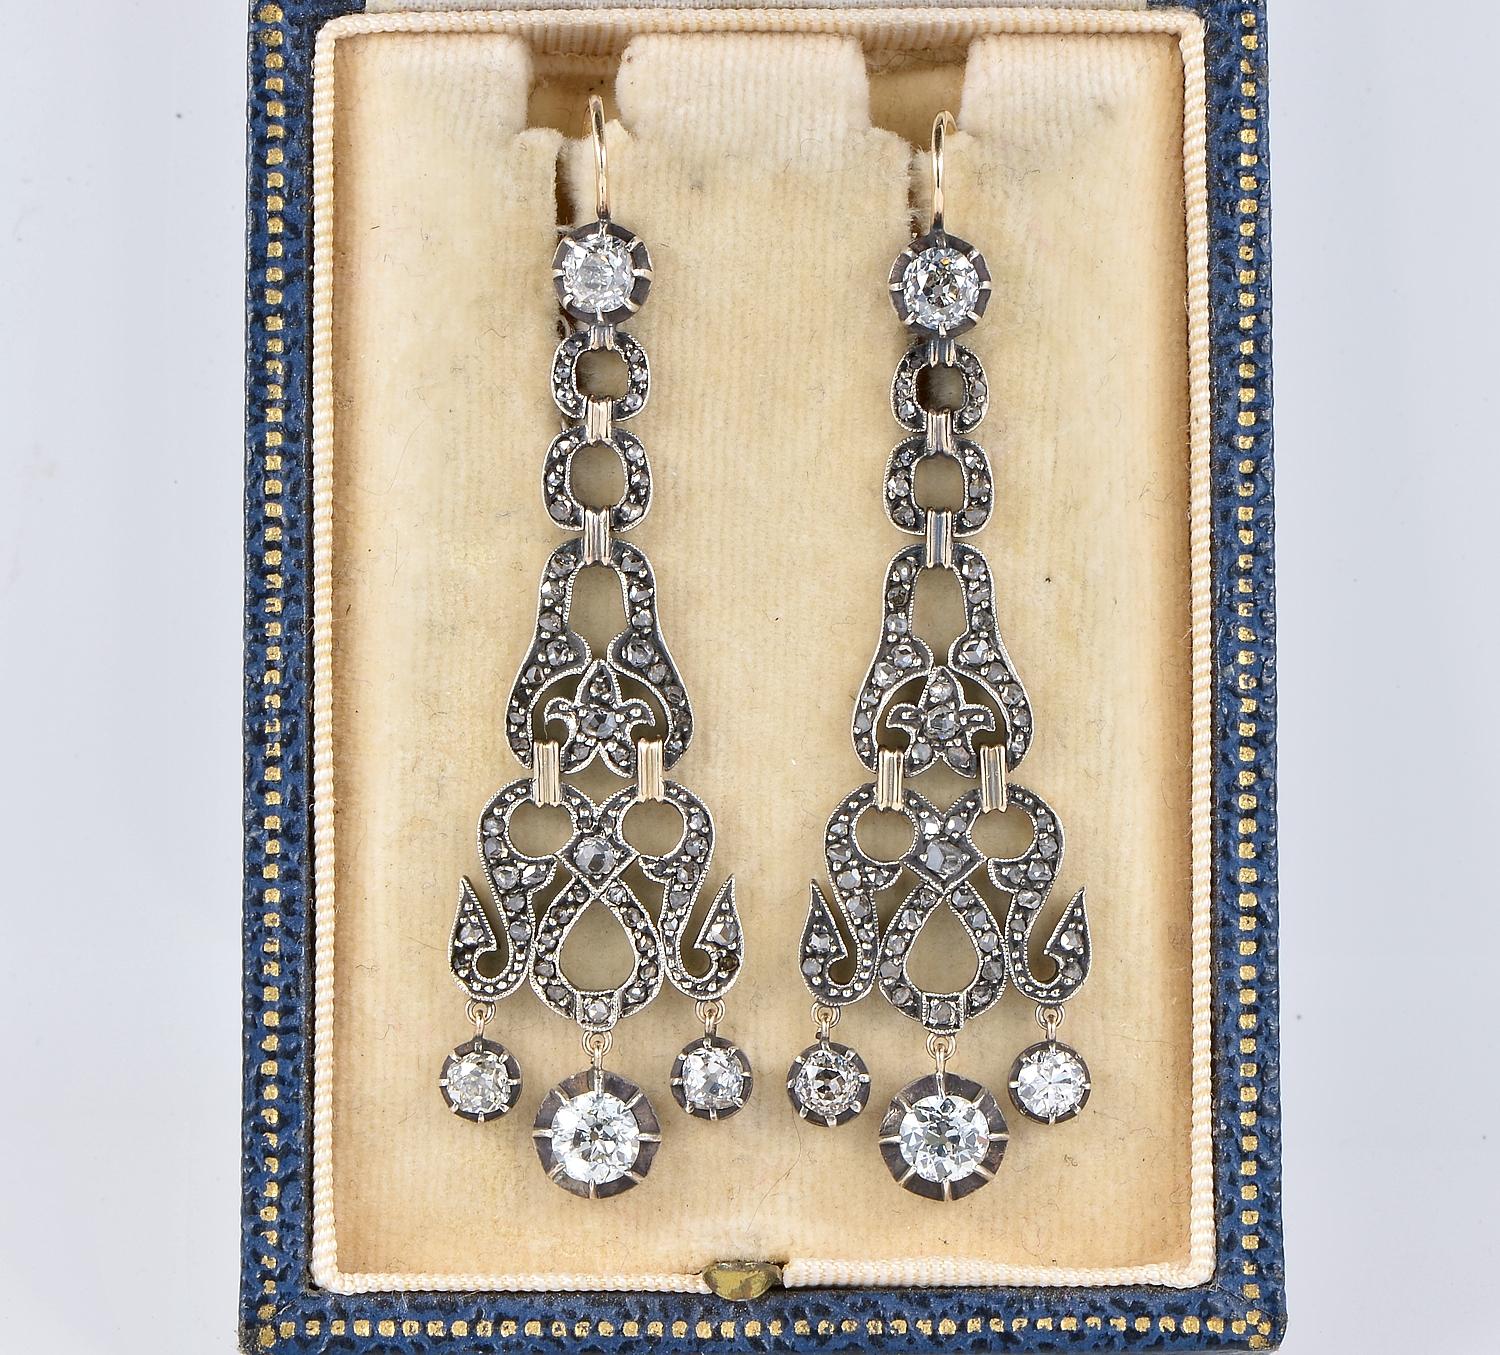 Ein hinreißendes Paar Diamantohrringe aus der georgischen Periode, wunderschön gegliedert und kunstvoll aus 18 KT Roségold gefertigt, gekrönt von Silber - ca. 1820
Aufwändige durchbrochene Verzierungen mit vielen Diamanten im Rosenschliff
Ein